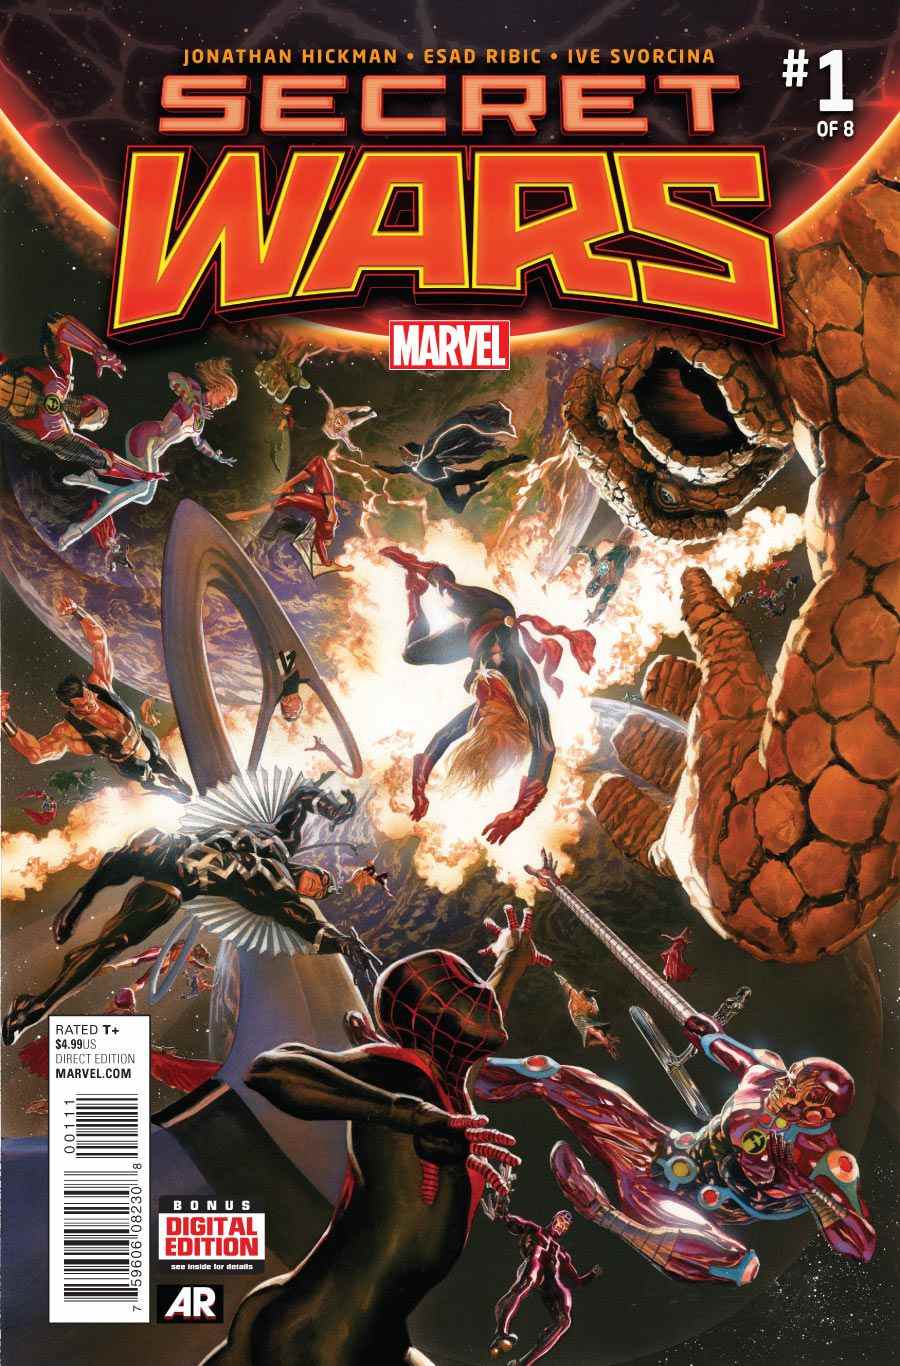 Guerres secrètes #1, Marvel Comics (2015).